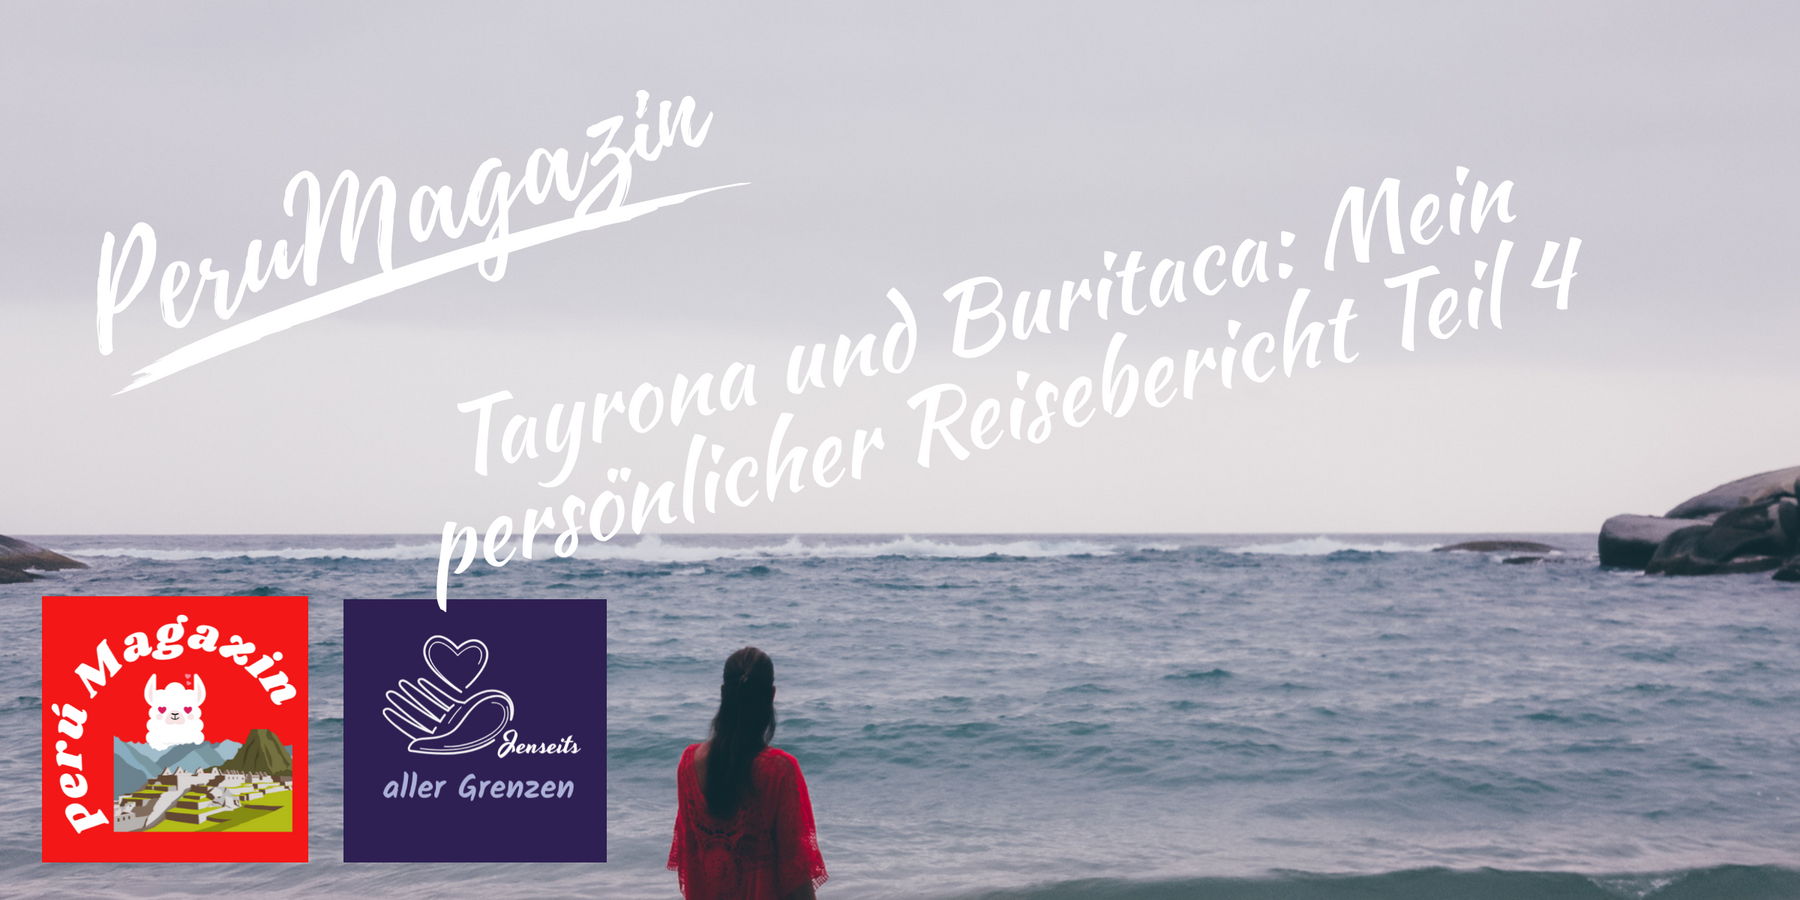 Tayrona und Buritaca: Mein persönlicher Reisebericht Teil 4